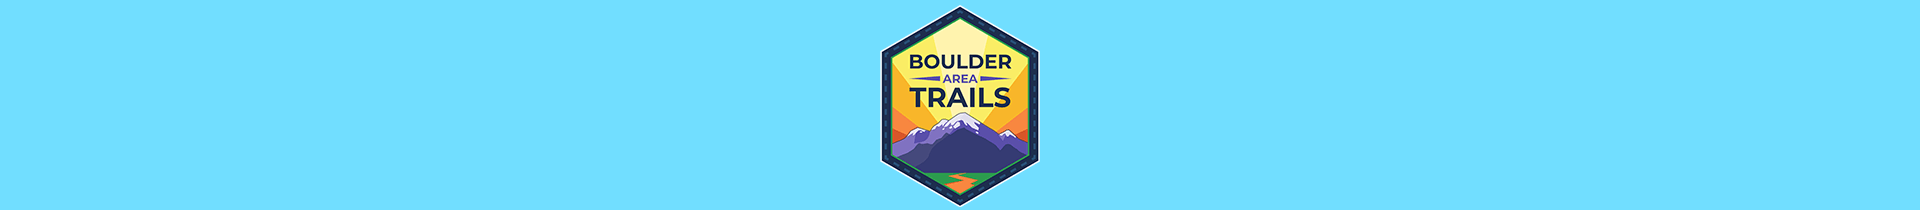 Boulder Area Trails App